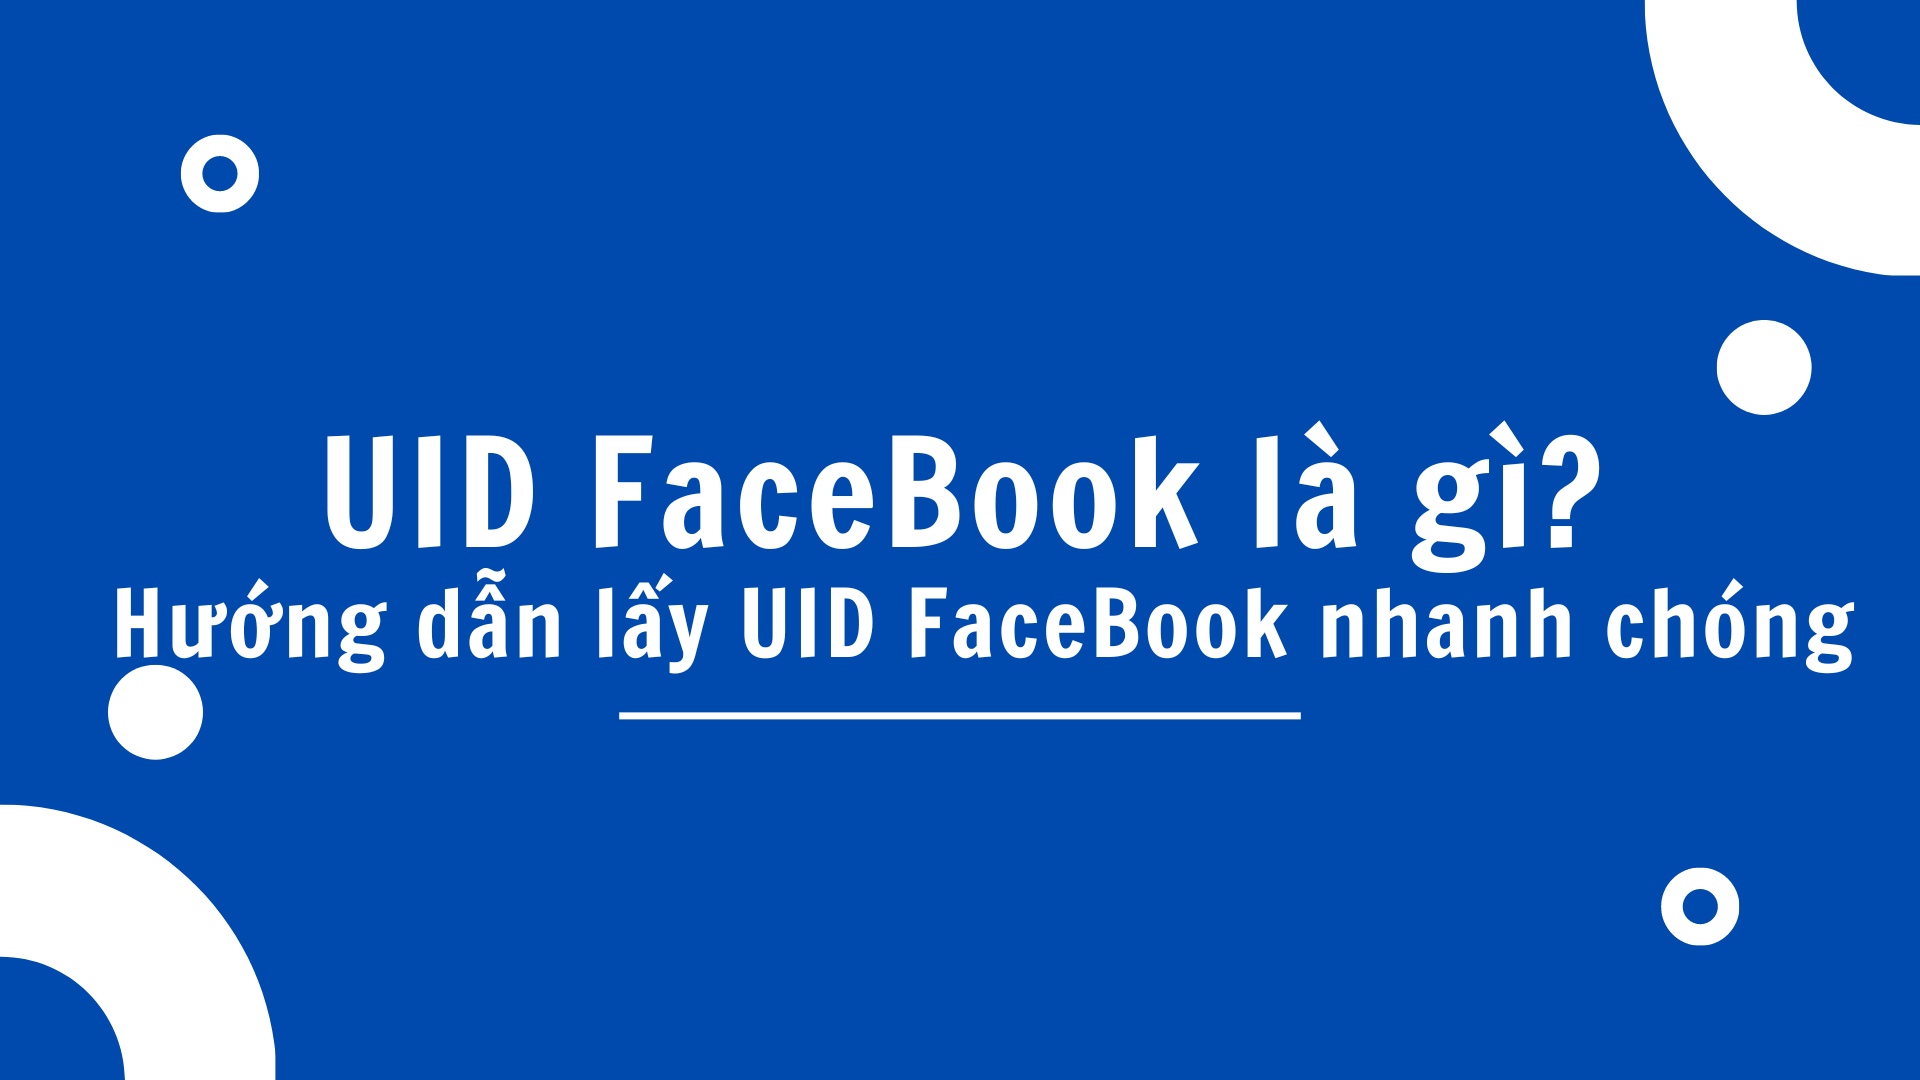 UID FaceBook là gì? Hướng dẫn lấy UID FaceBook nhanh chóng